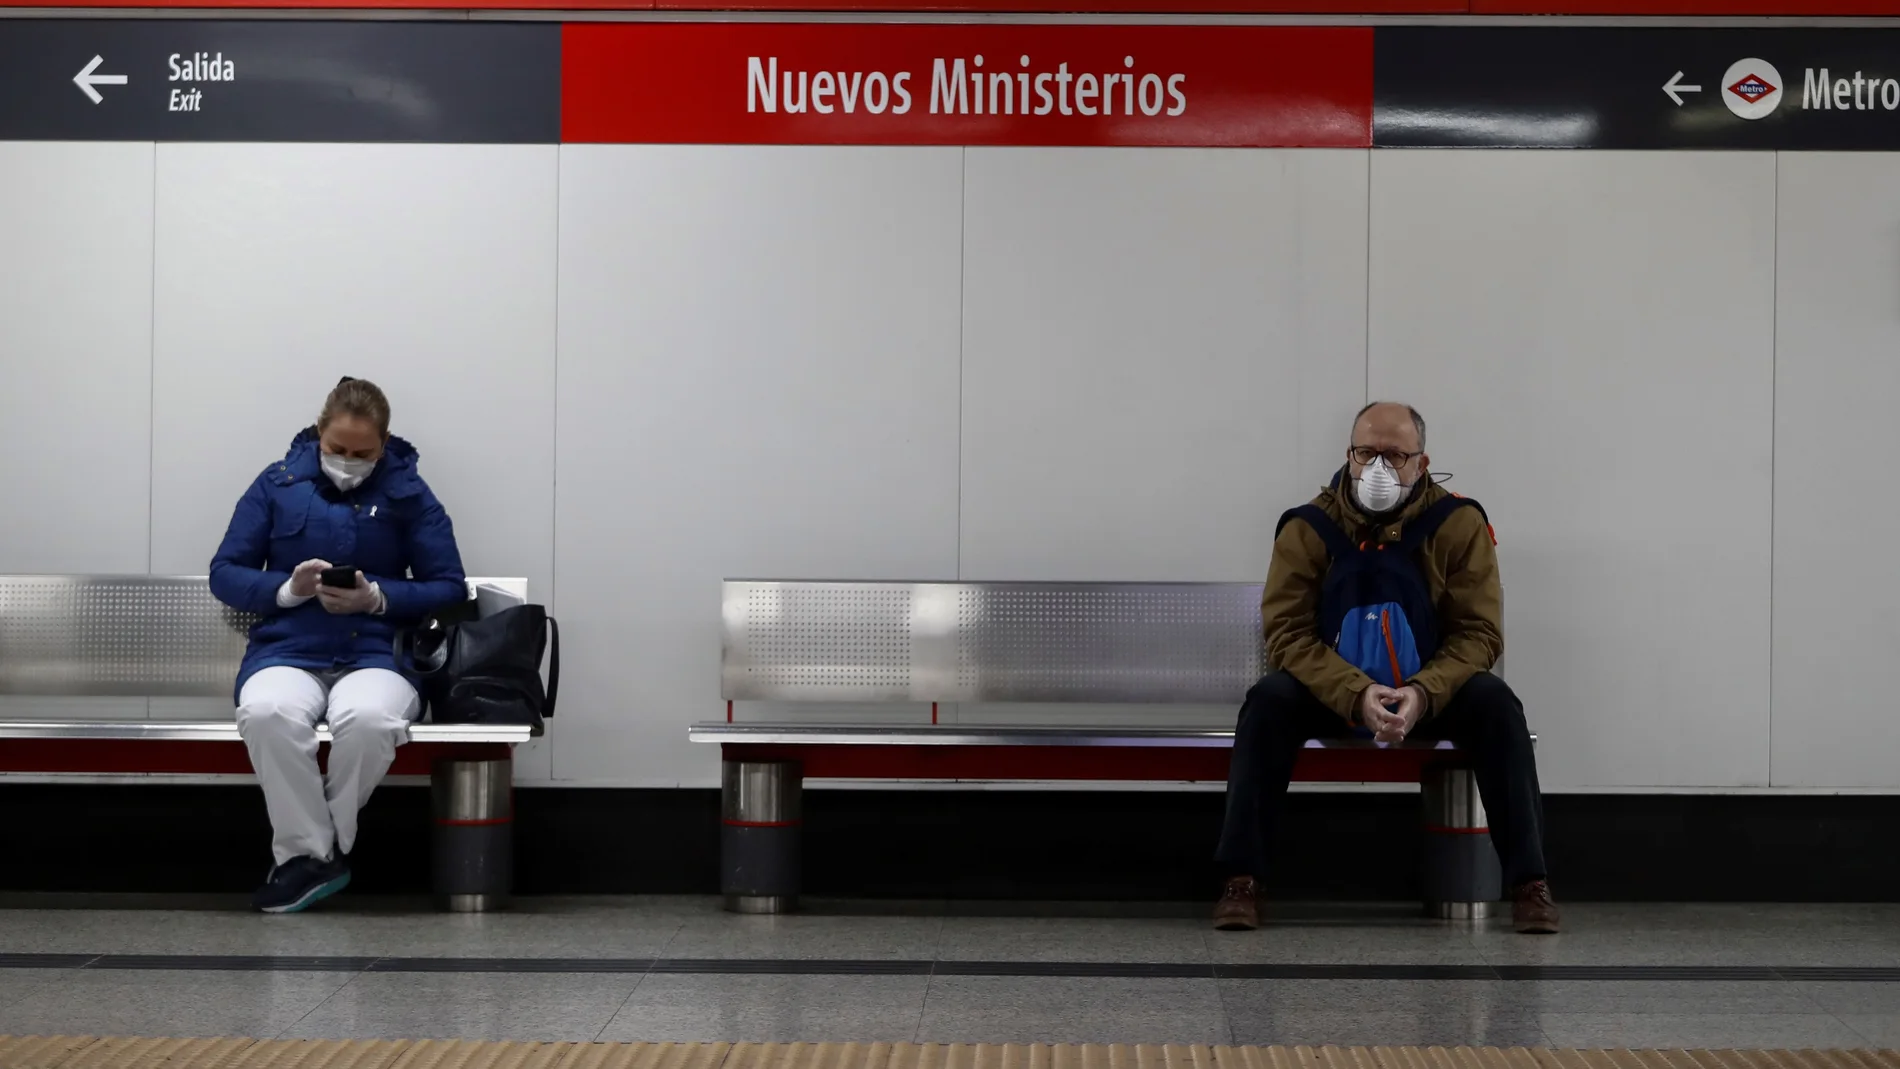 Dos usuarios protegidos con marcarillas respetan la distancia de seguridad mientras esperan la llegada del tren en la estación de Cercanías de Nuevos Ministerios de Madrid